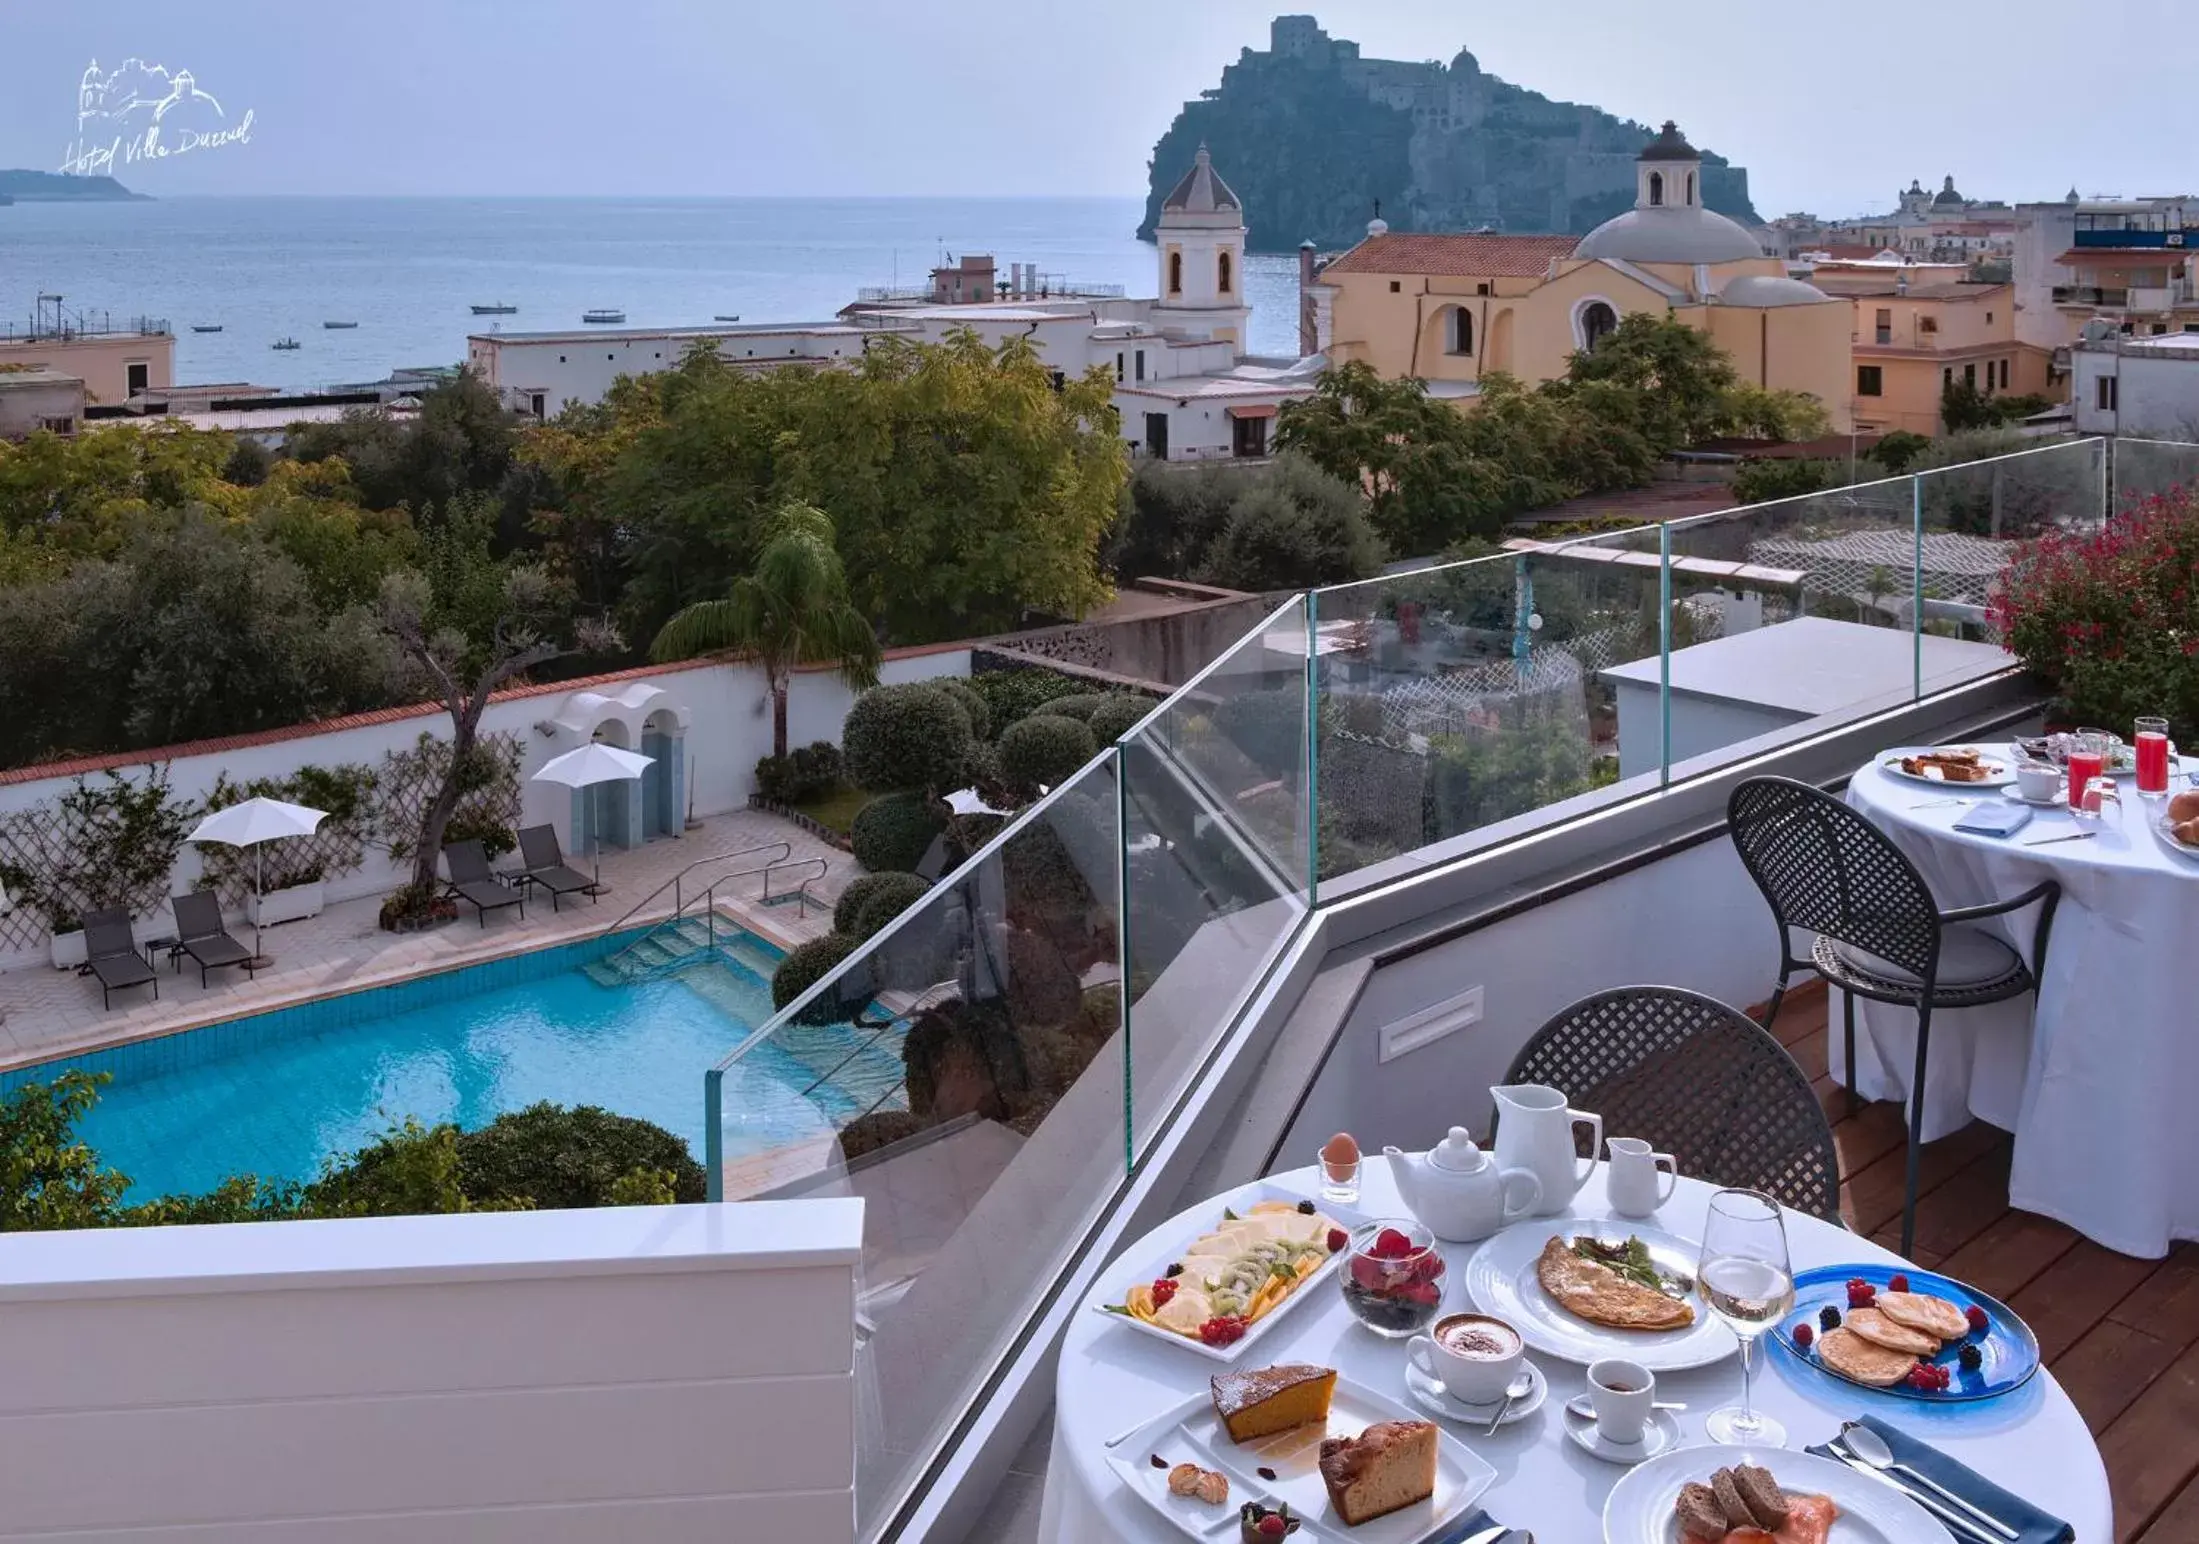 Pool View in Hotel Villa Durrueli Resort & Spa